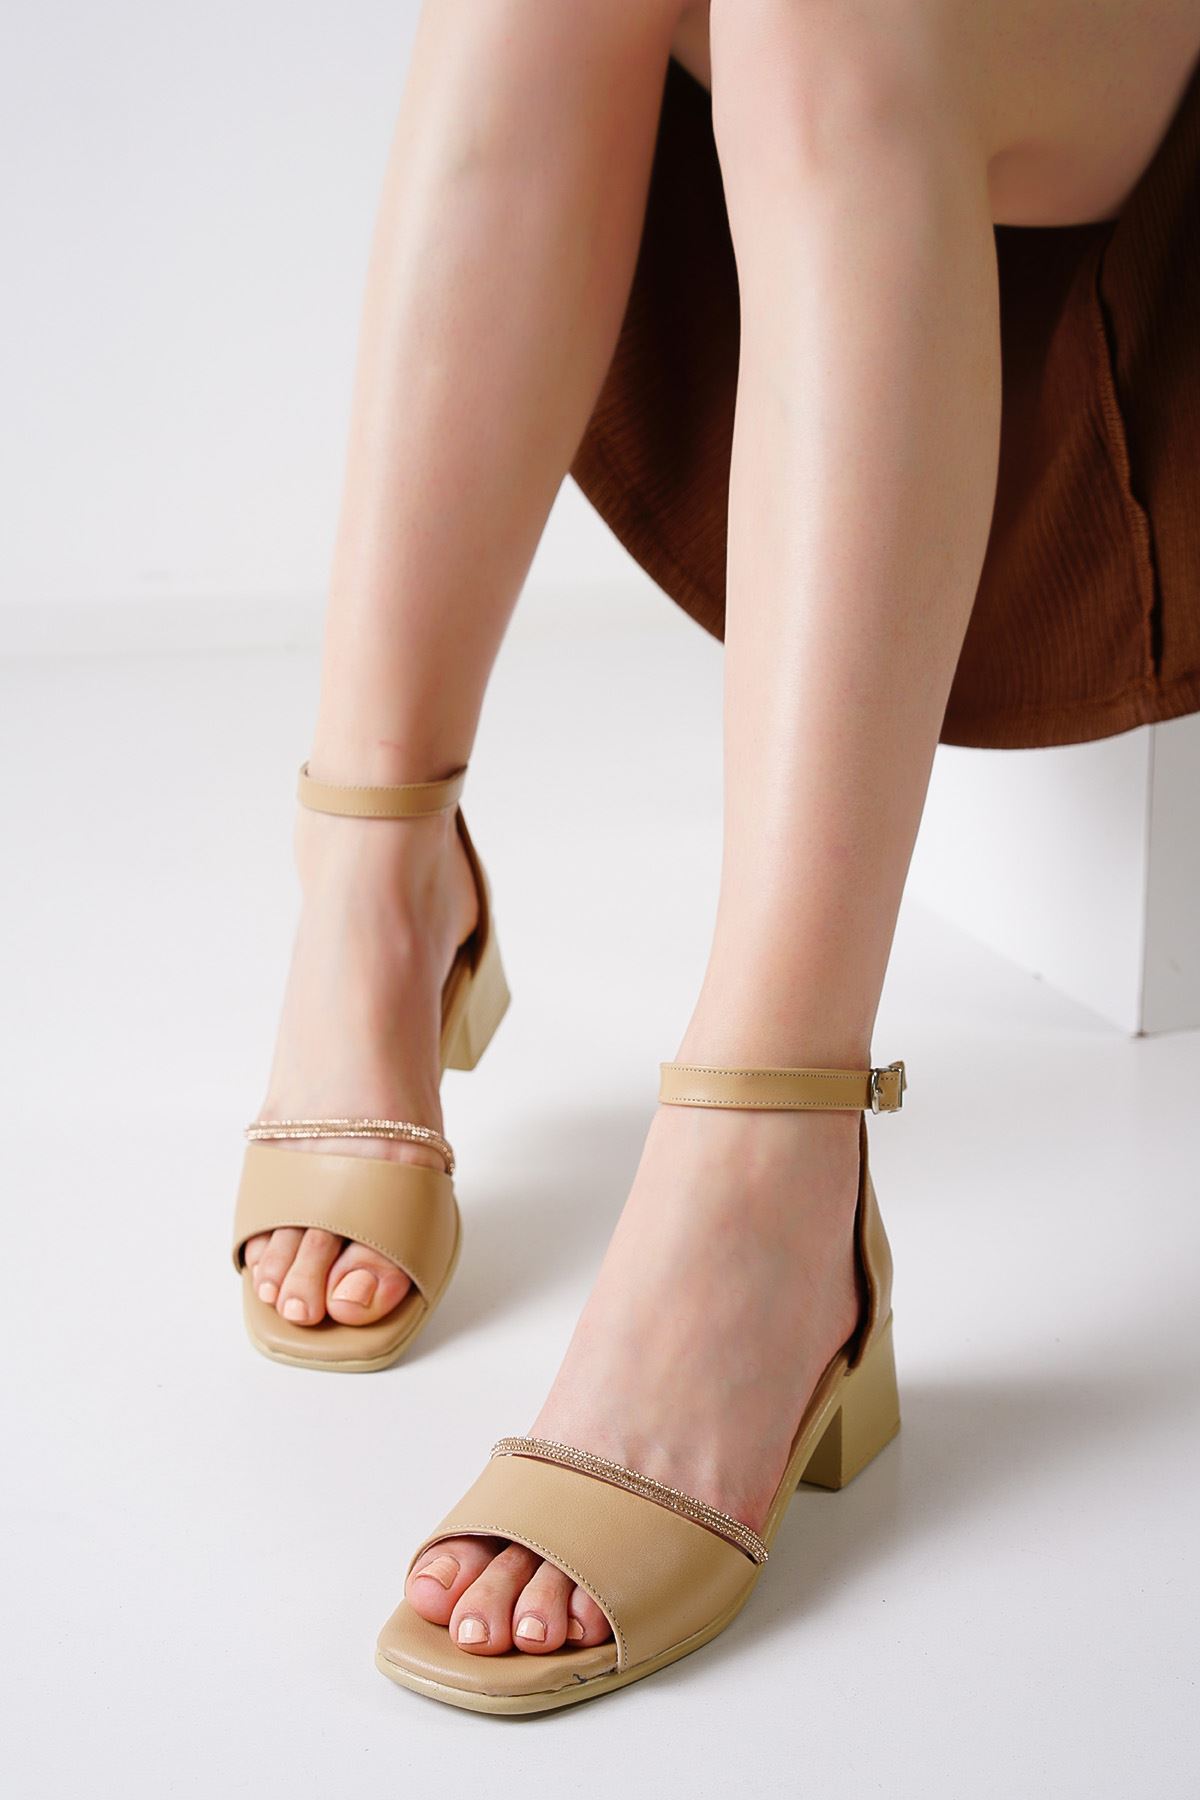 Auron Nude Mat Deri Kadın Topuklu Ayakkabı